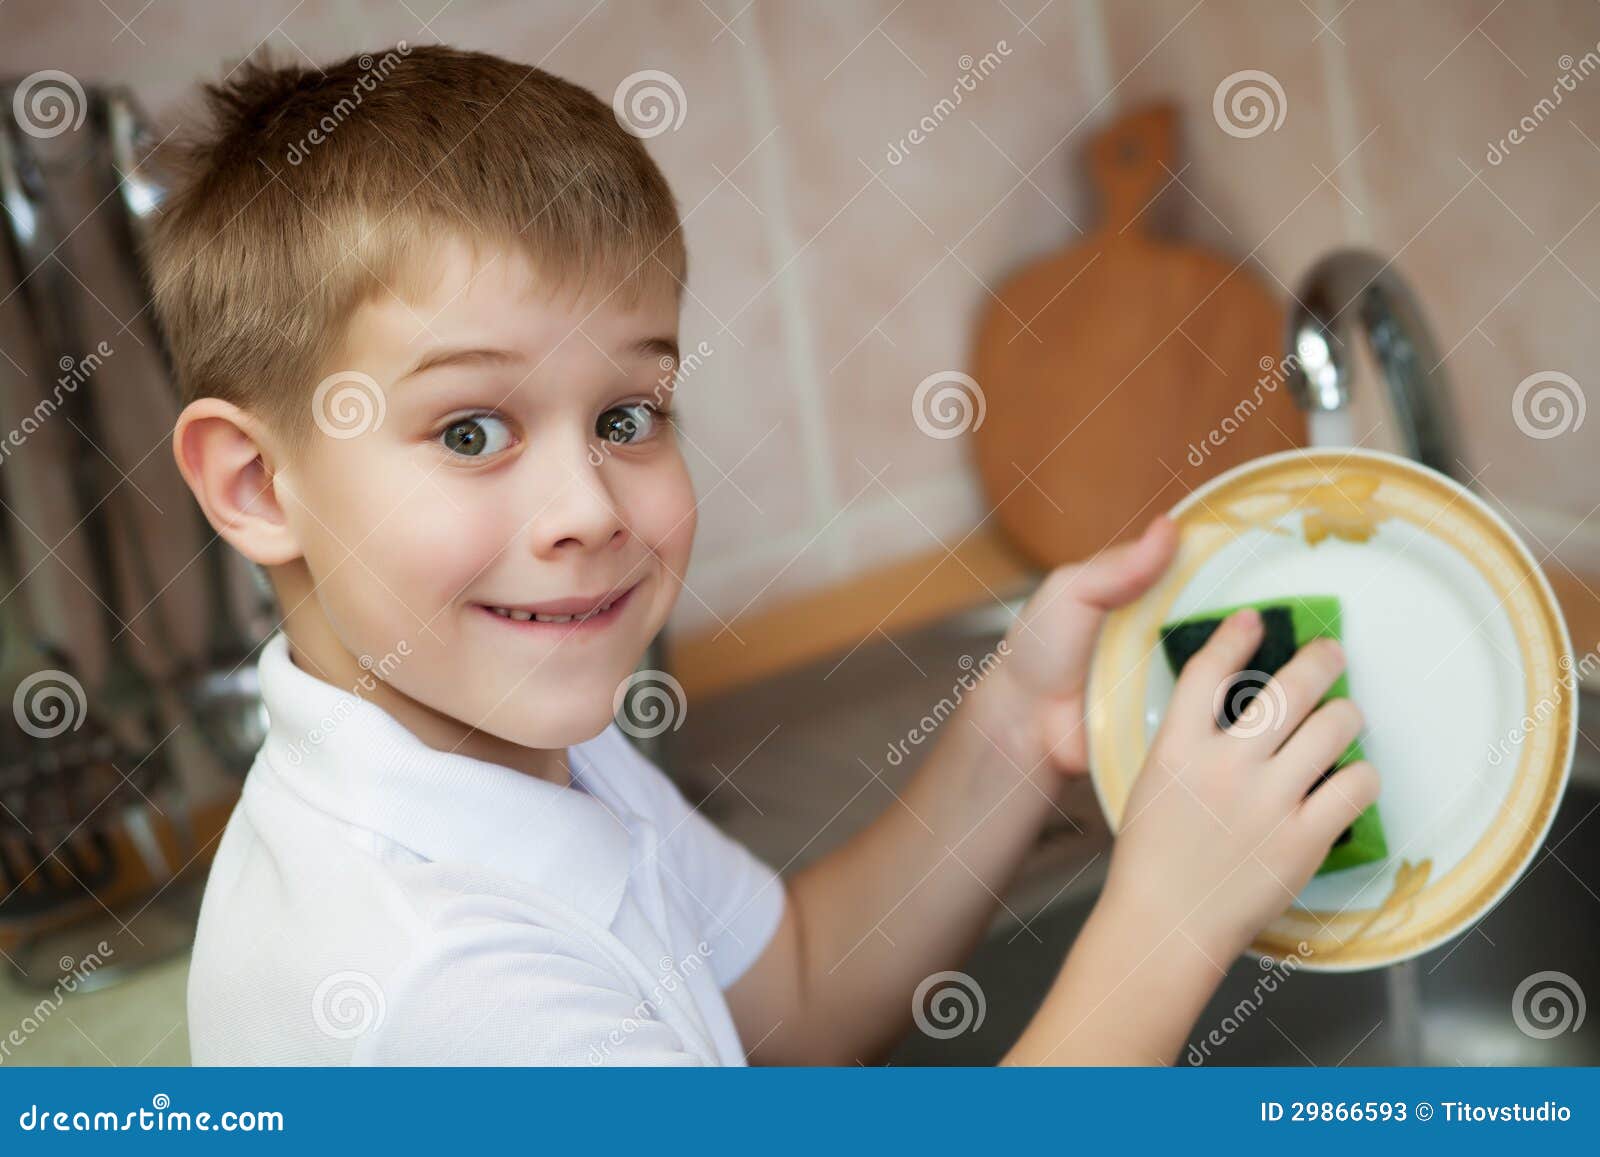 Мальчик моет посуду. Мальчик моет посуду фото. Мальчик с тарелкой. Ребенок моет посуду. Мальчик с тарелкой в руках.